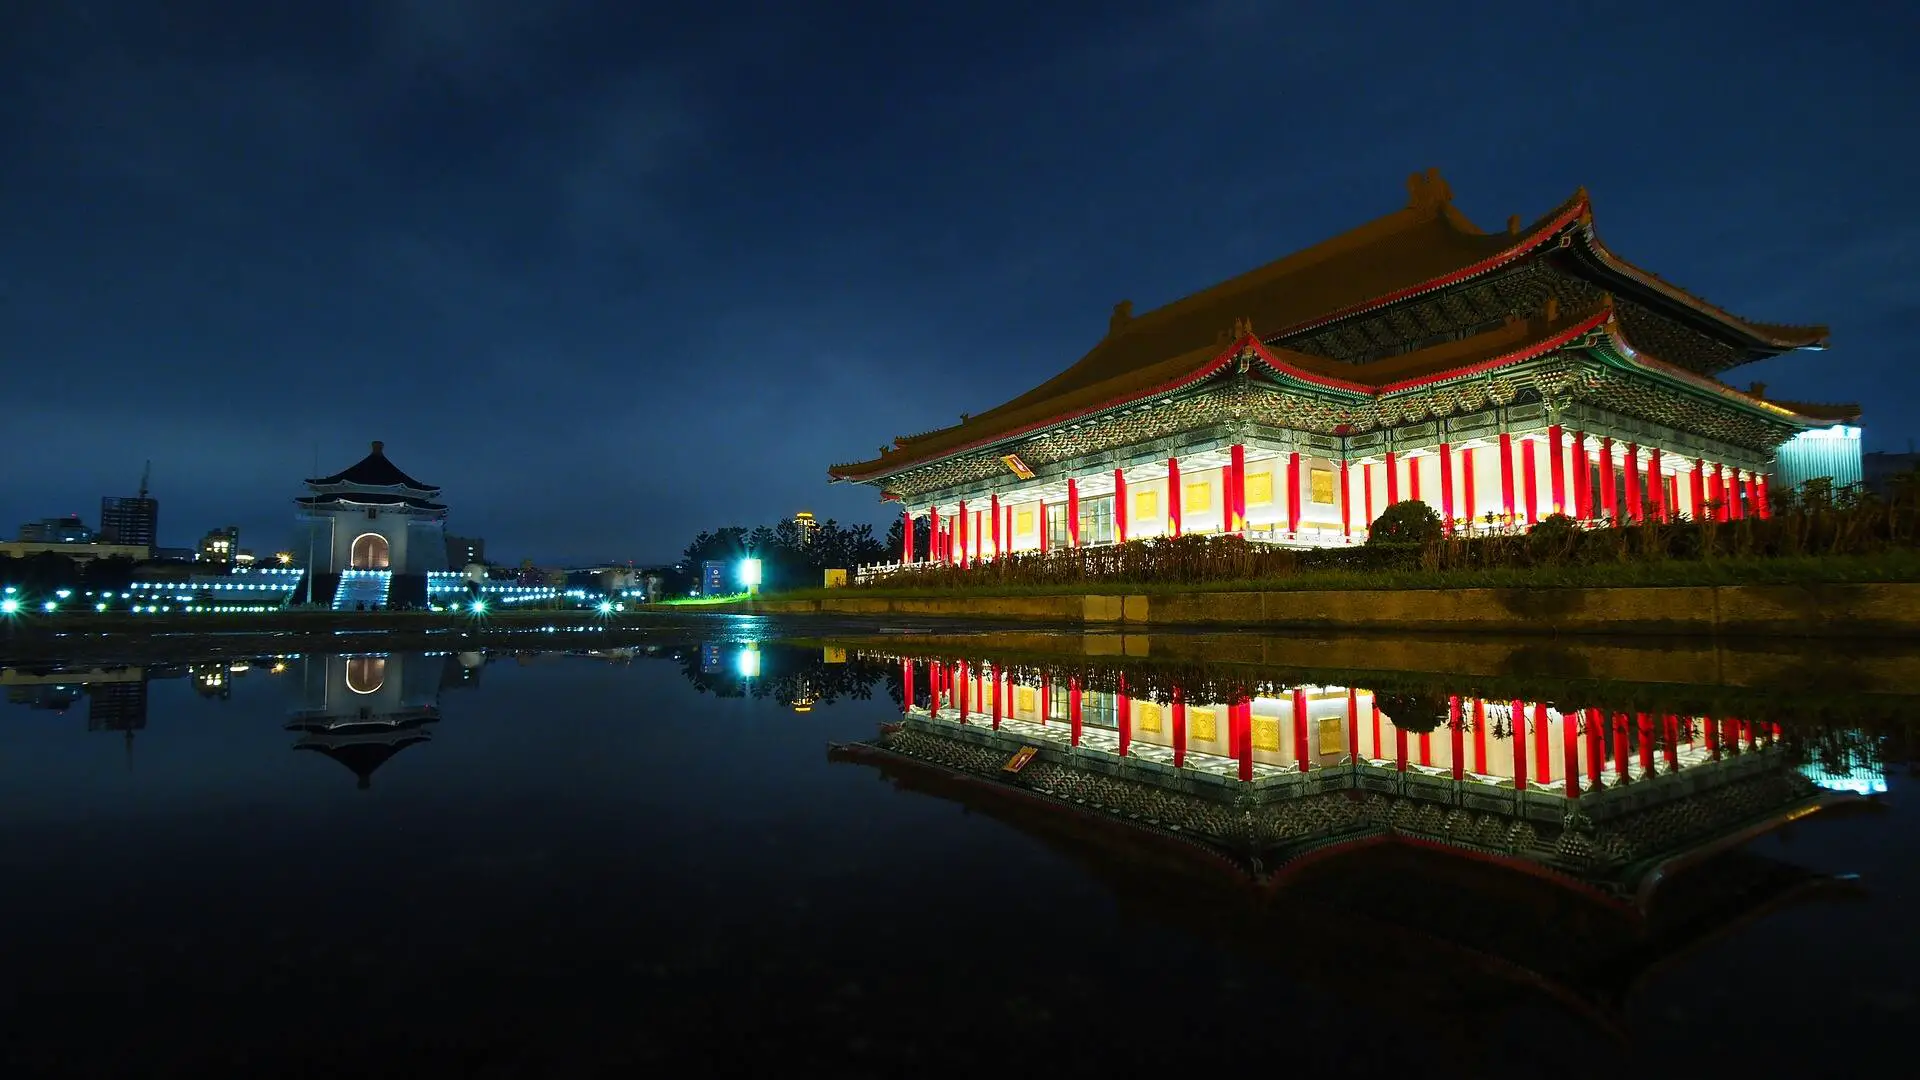 Chiang Kai-shek Memorial Hall at Night